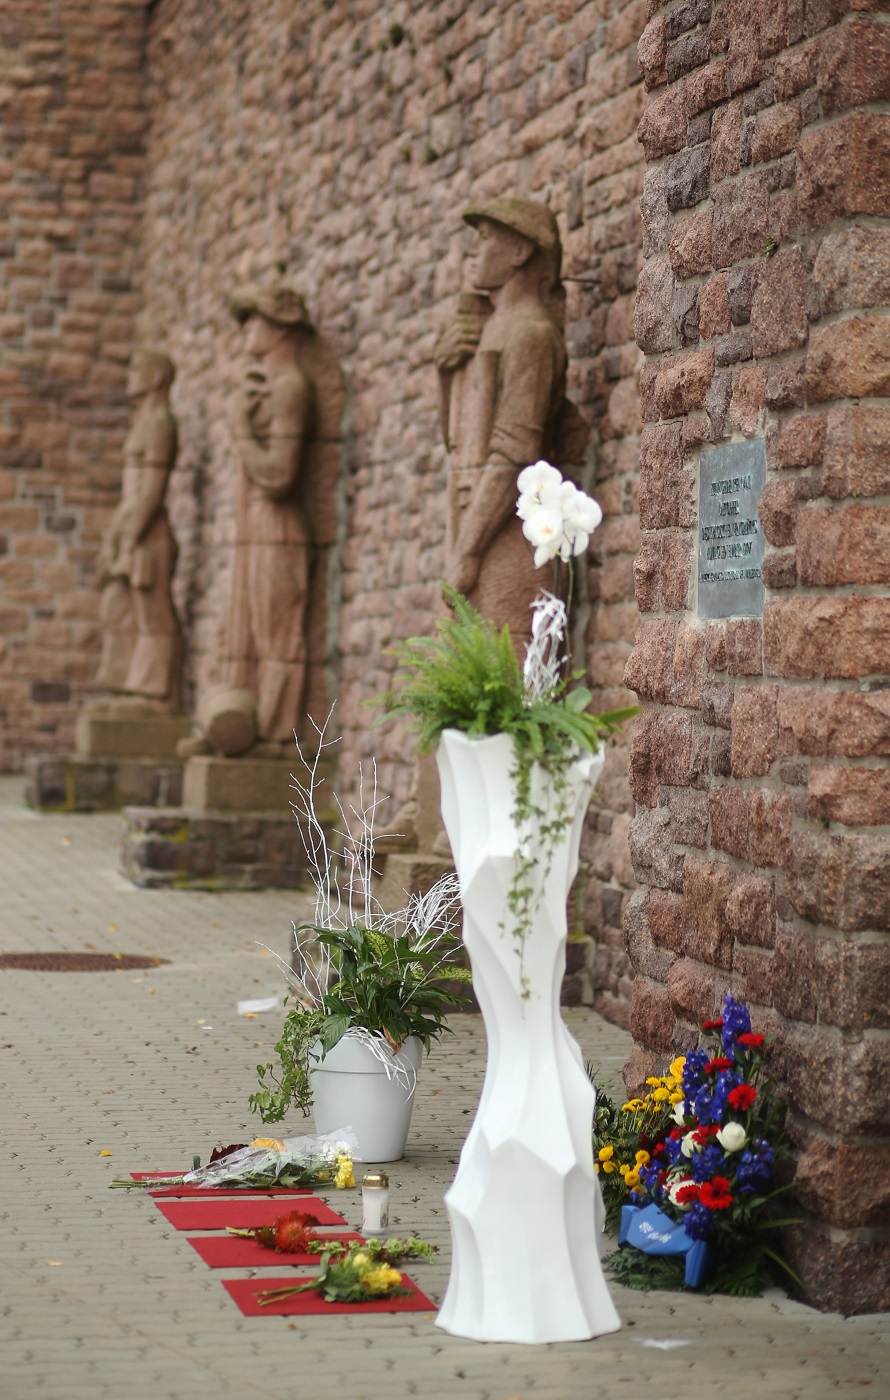 Zum Gedenktag legten Betroffene Blumensträuße an der Gedenktafel am Erdgas Sportpark in Halle nieder. (Foto: Uwe Köhn)